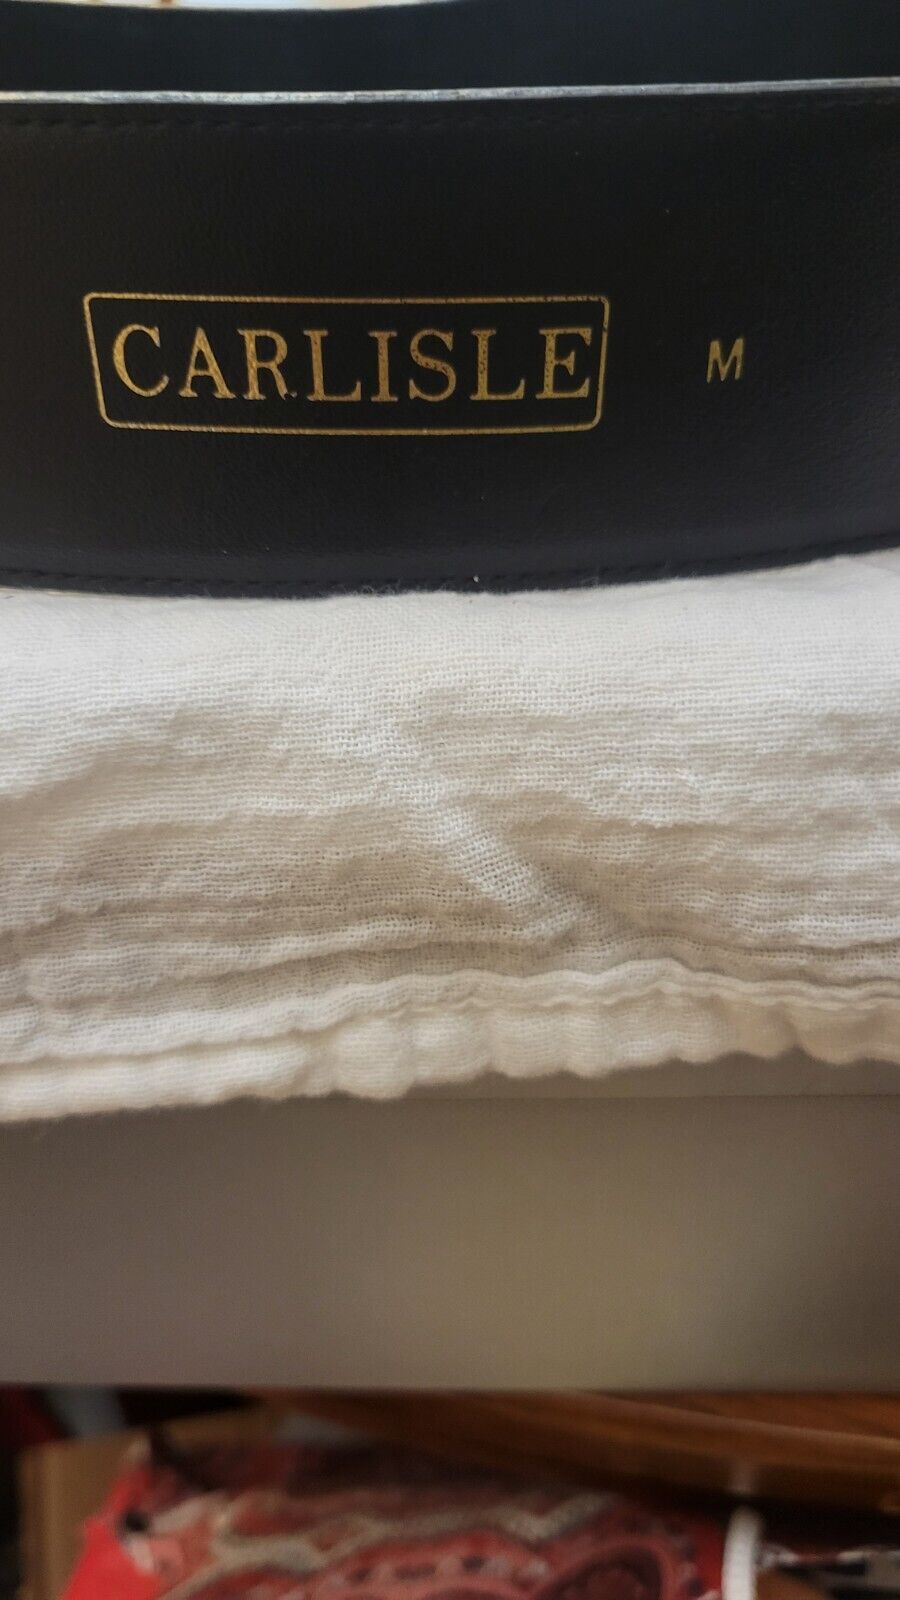 Carlisle Black Suede Belt Size Medium - image 6